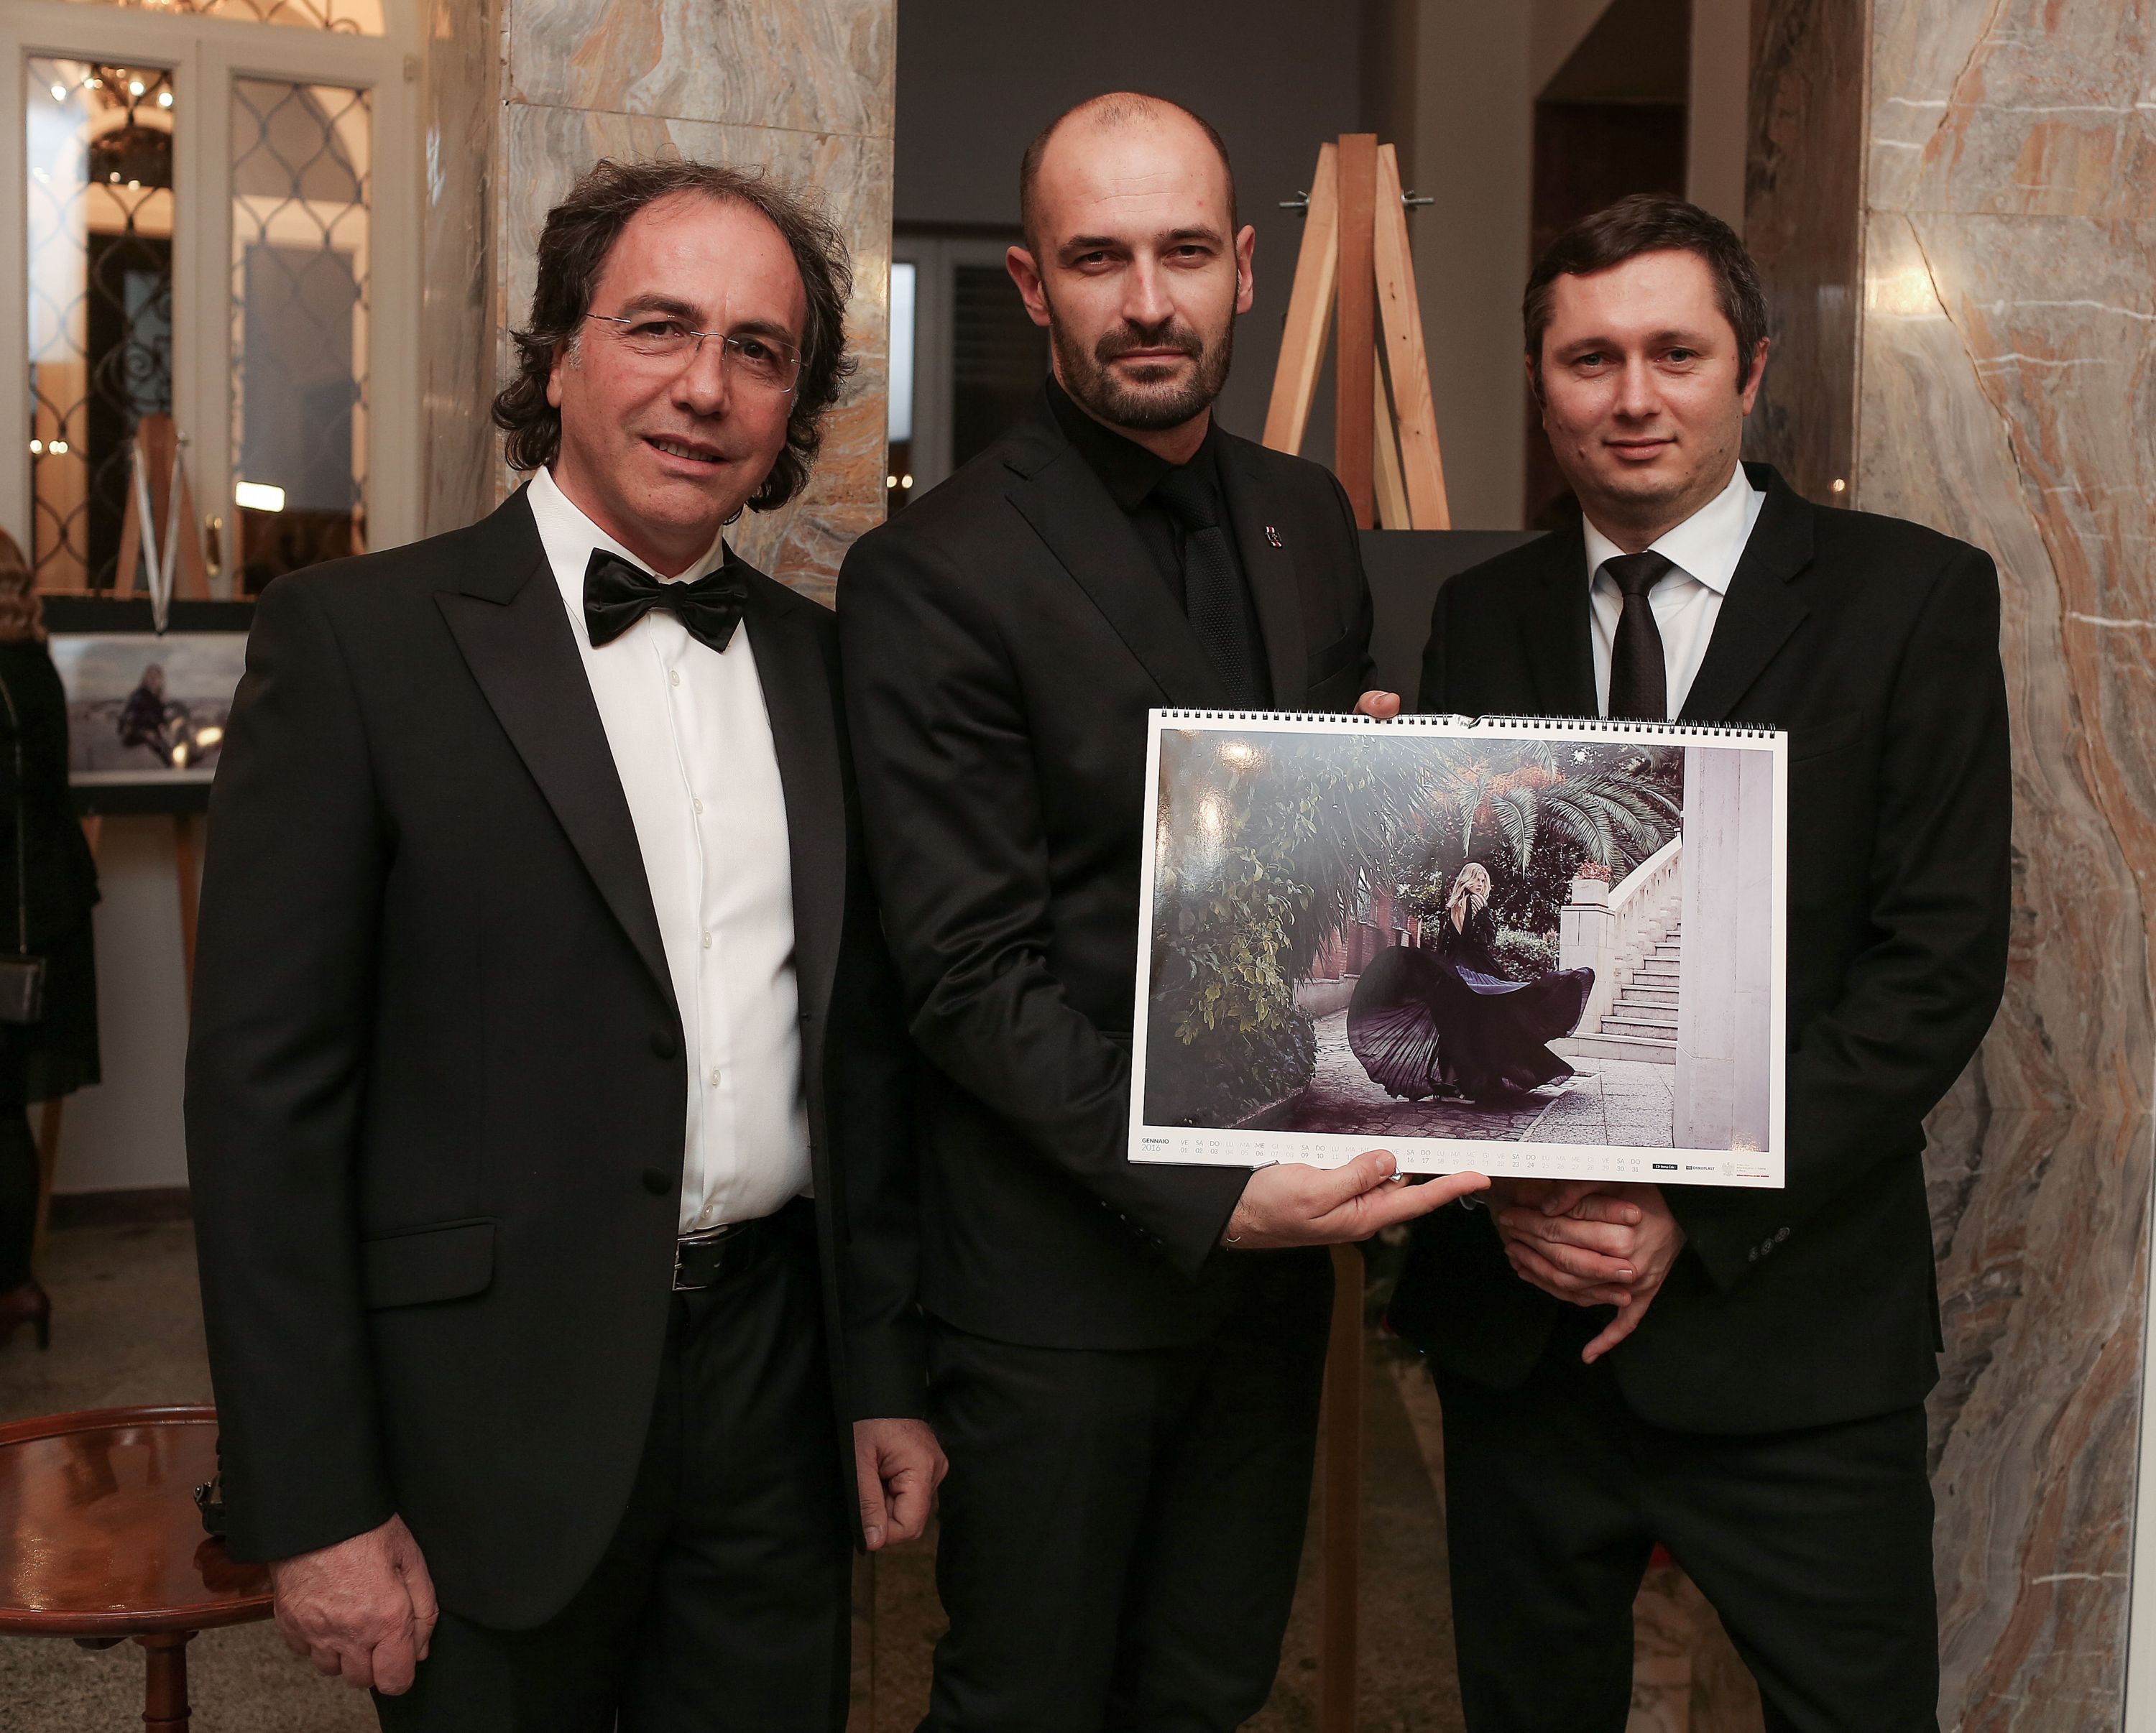 Od lewej: Giuseppe Bengivenga, Szef Rynku Włoskiego, Piotr Stokłosa, fotograf. Mikołaj Placek. Prezes Zarządu